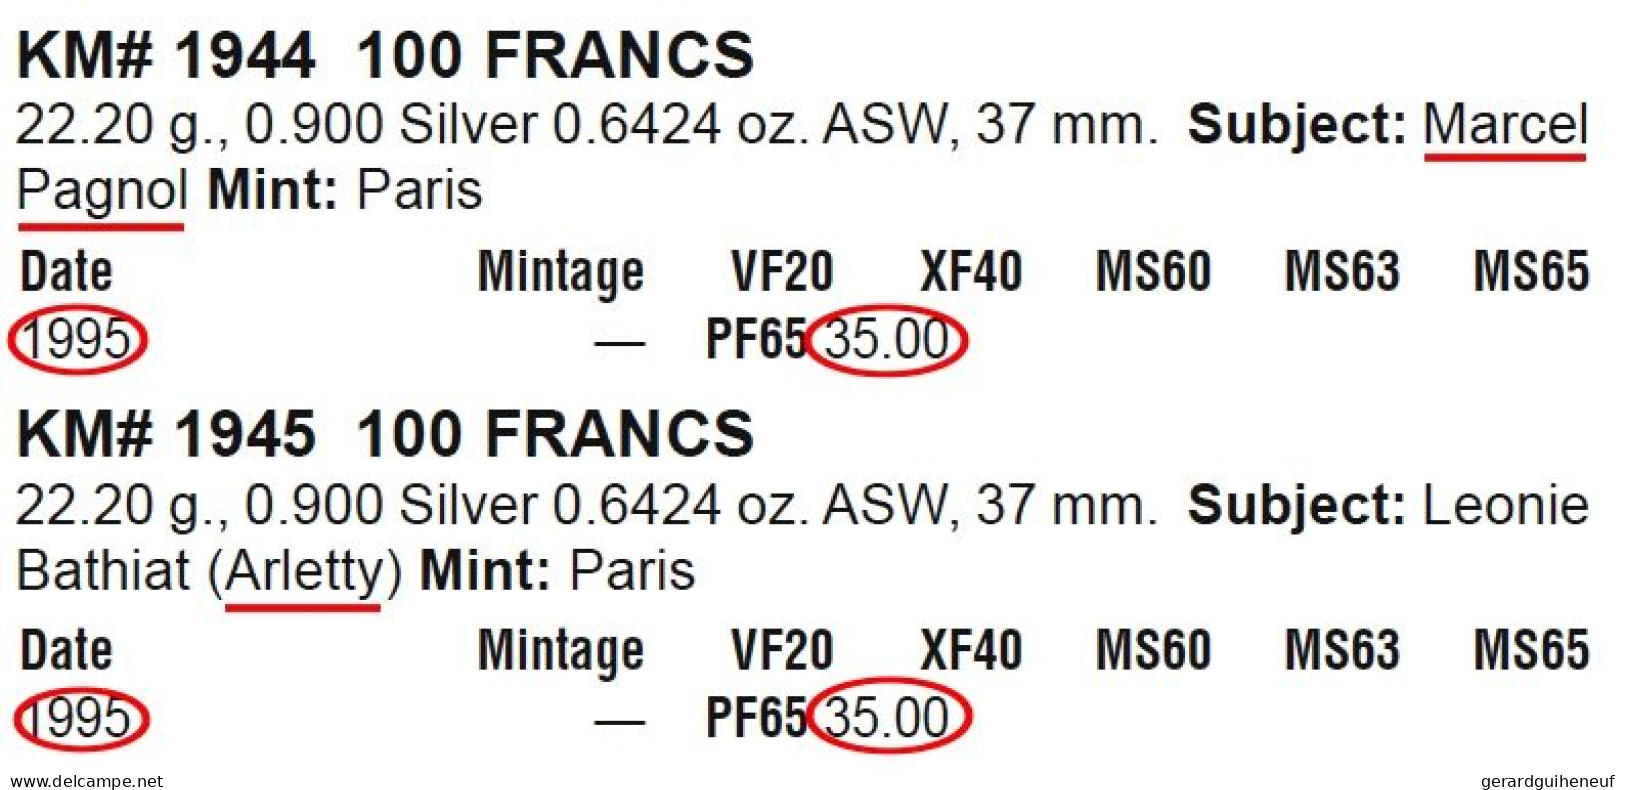 FRANCE : 3 Monnaies 100 Francs ARGENT En Qualité FDC - Cotation : 97 Euros - Lots & Kiloware - Coins